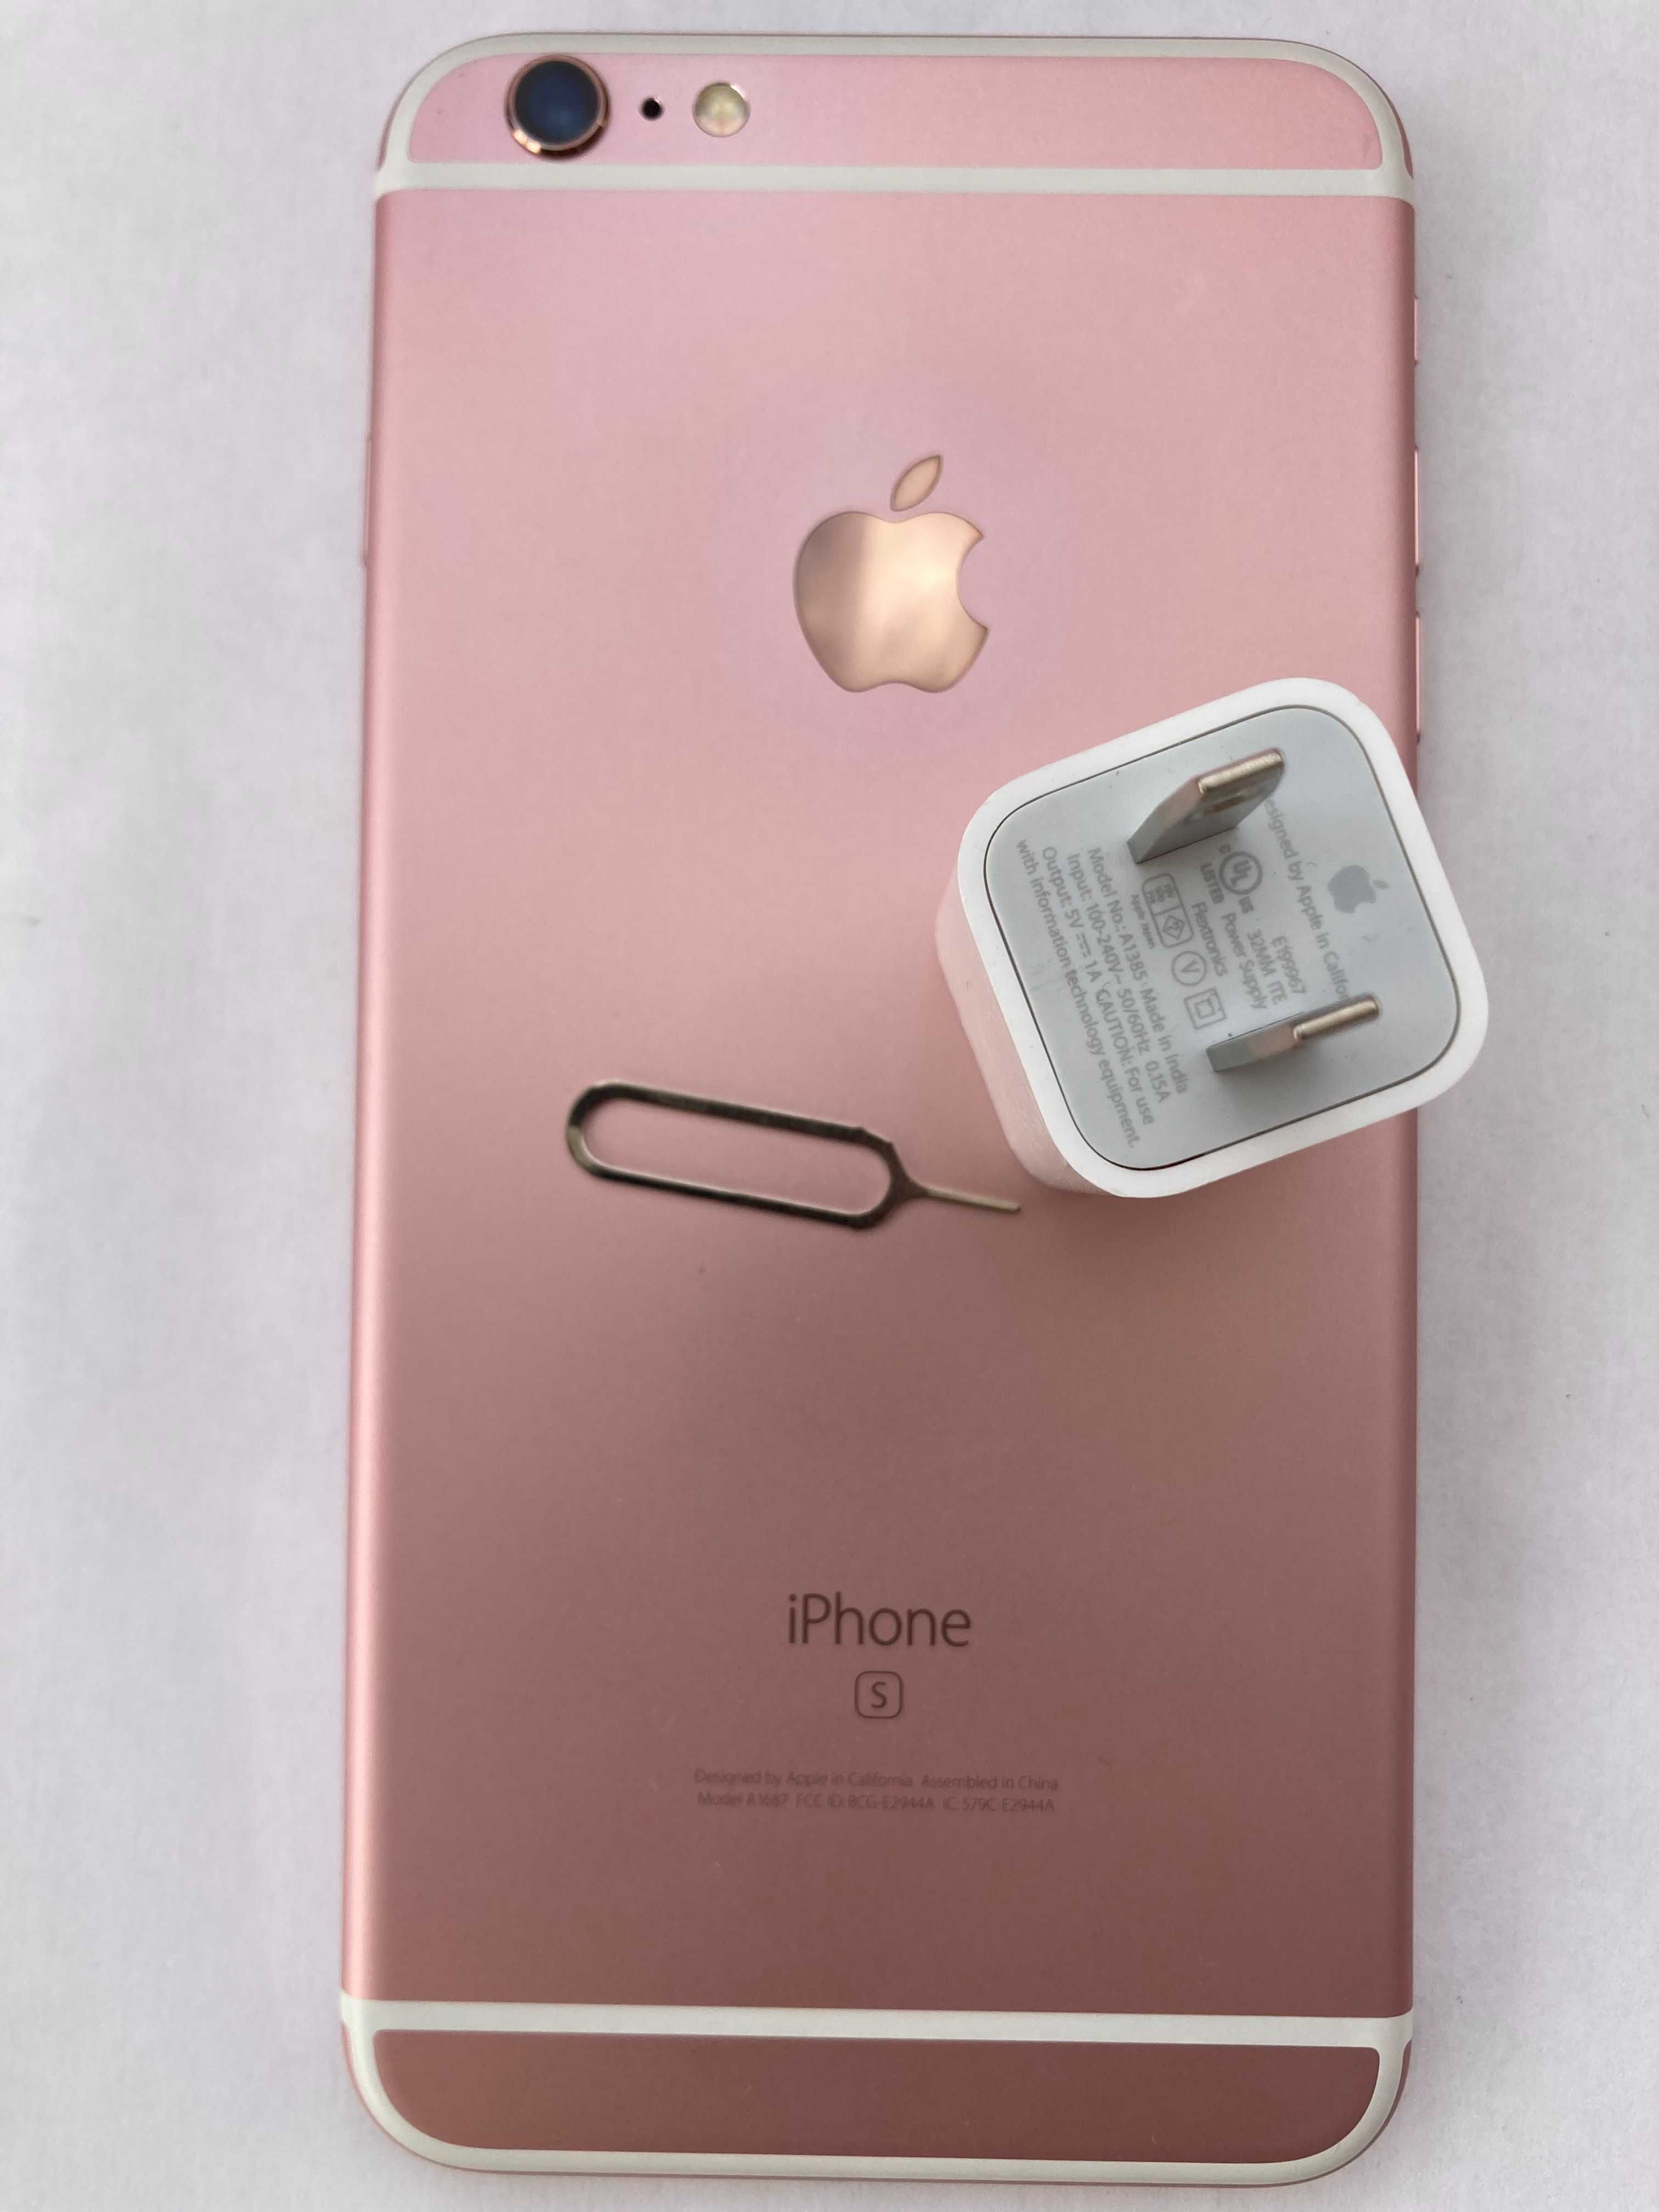 Apple iPhone 6s plus 32GB Rose Gold neverlock